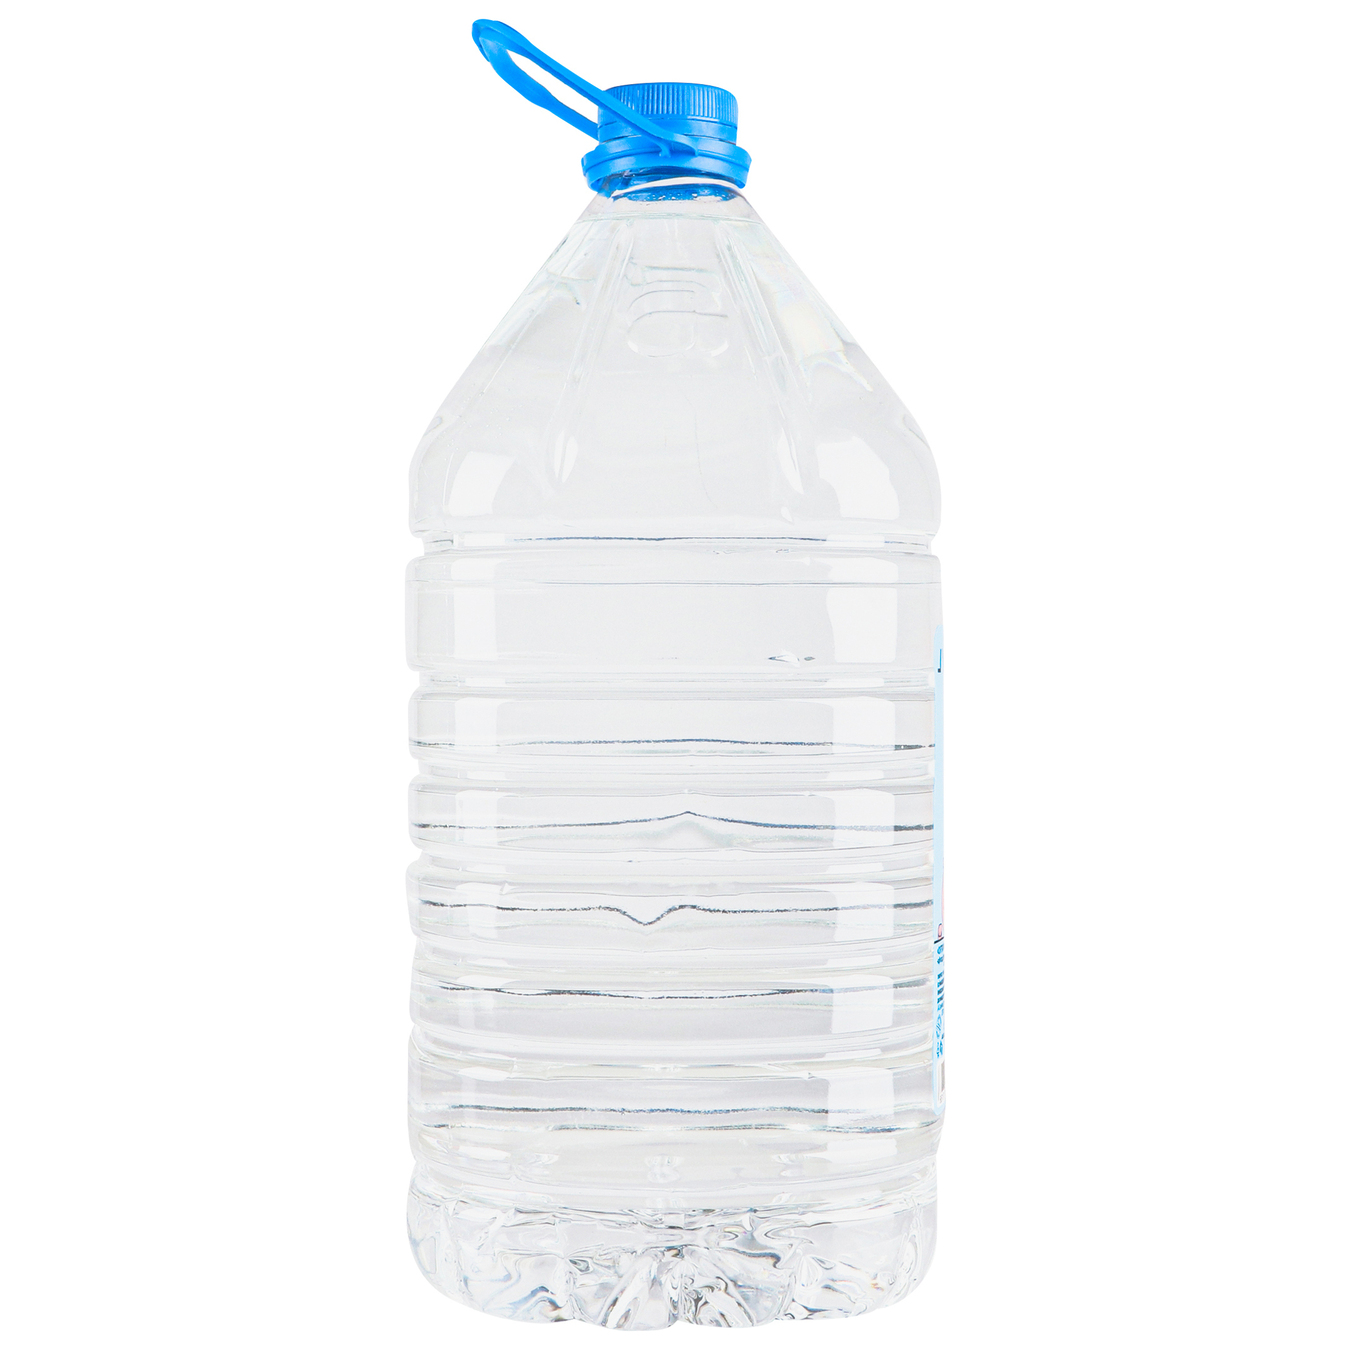 Malyatko children's drinking water 5l 3